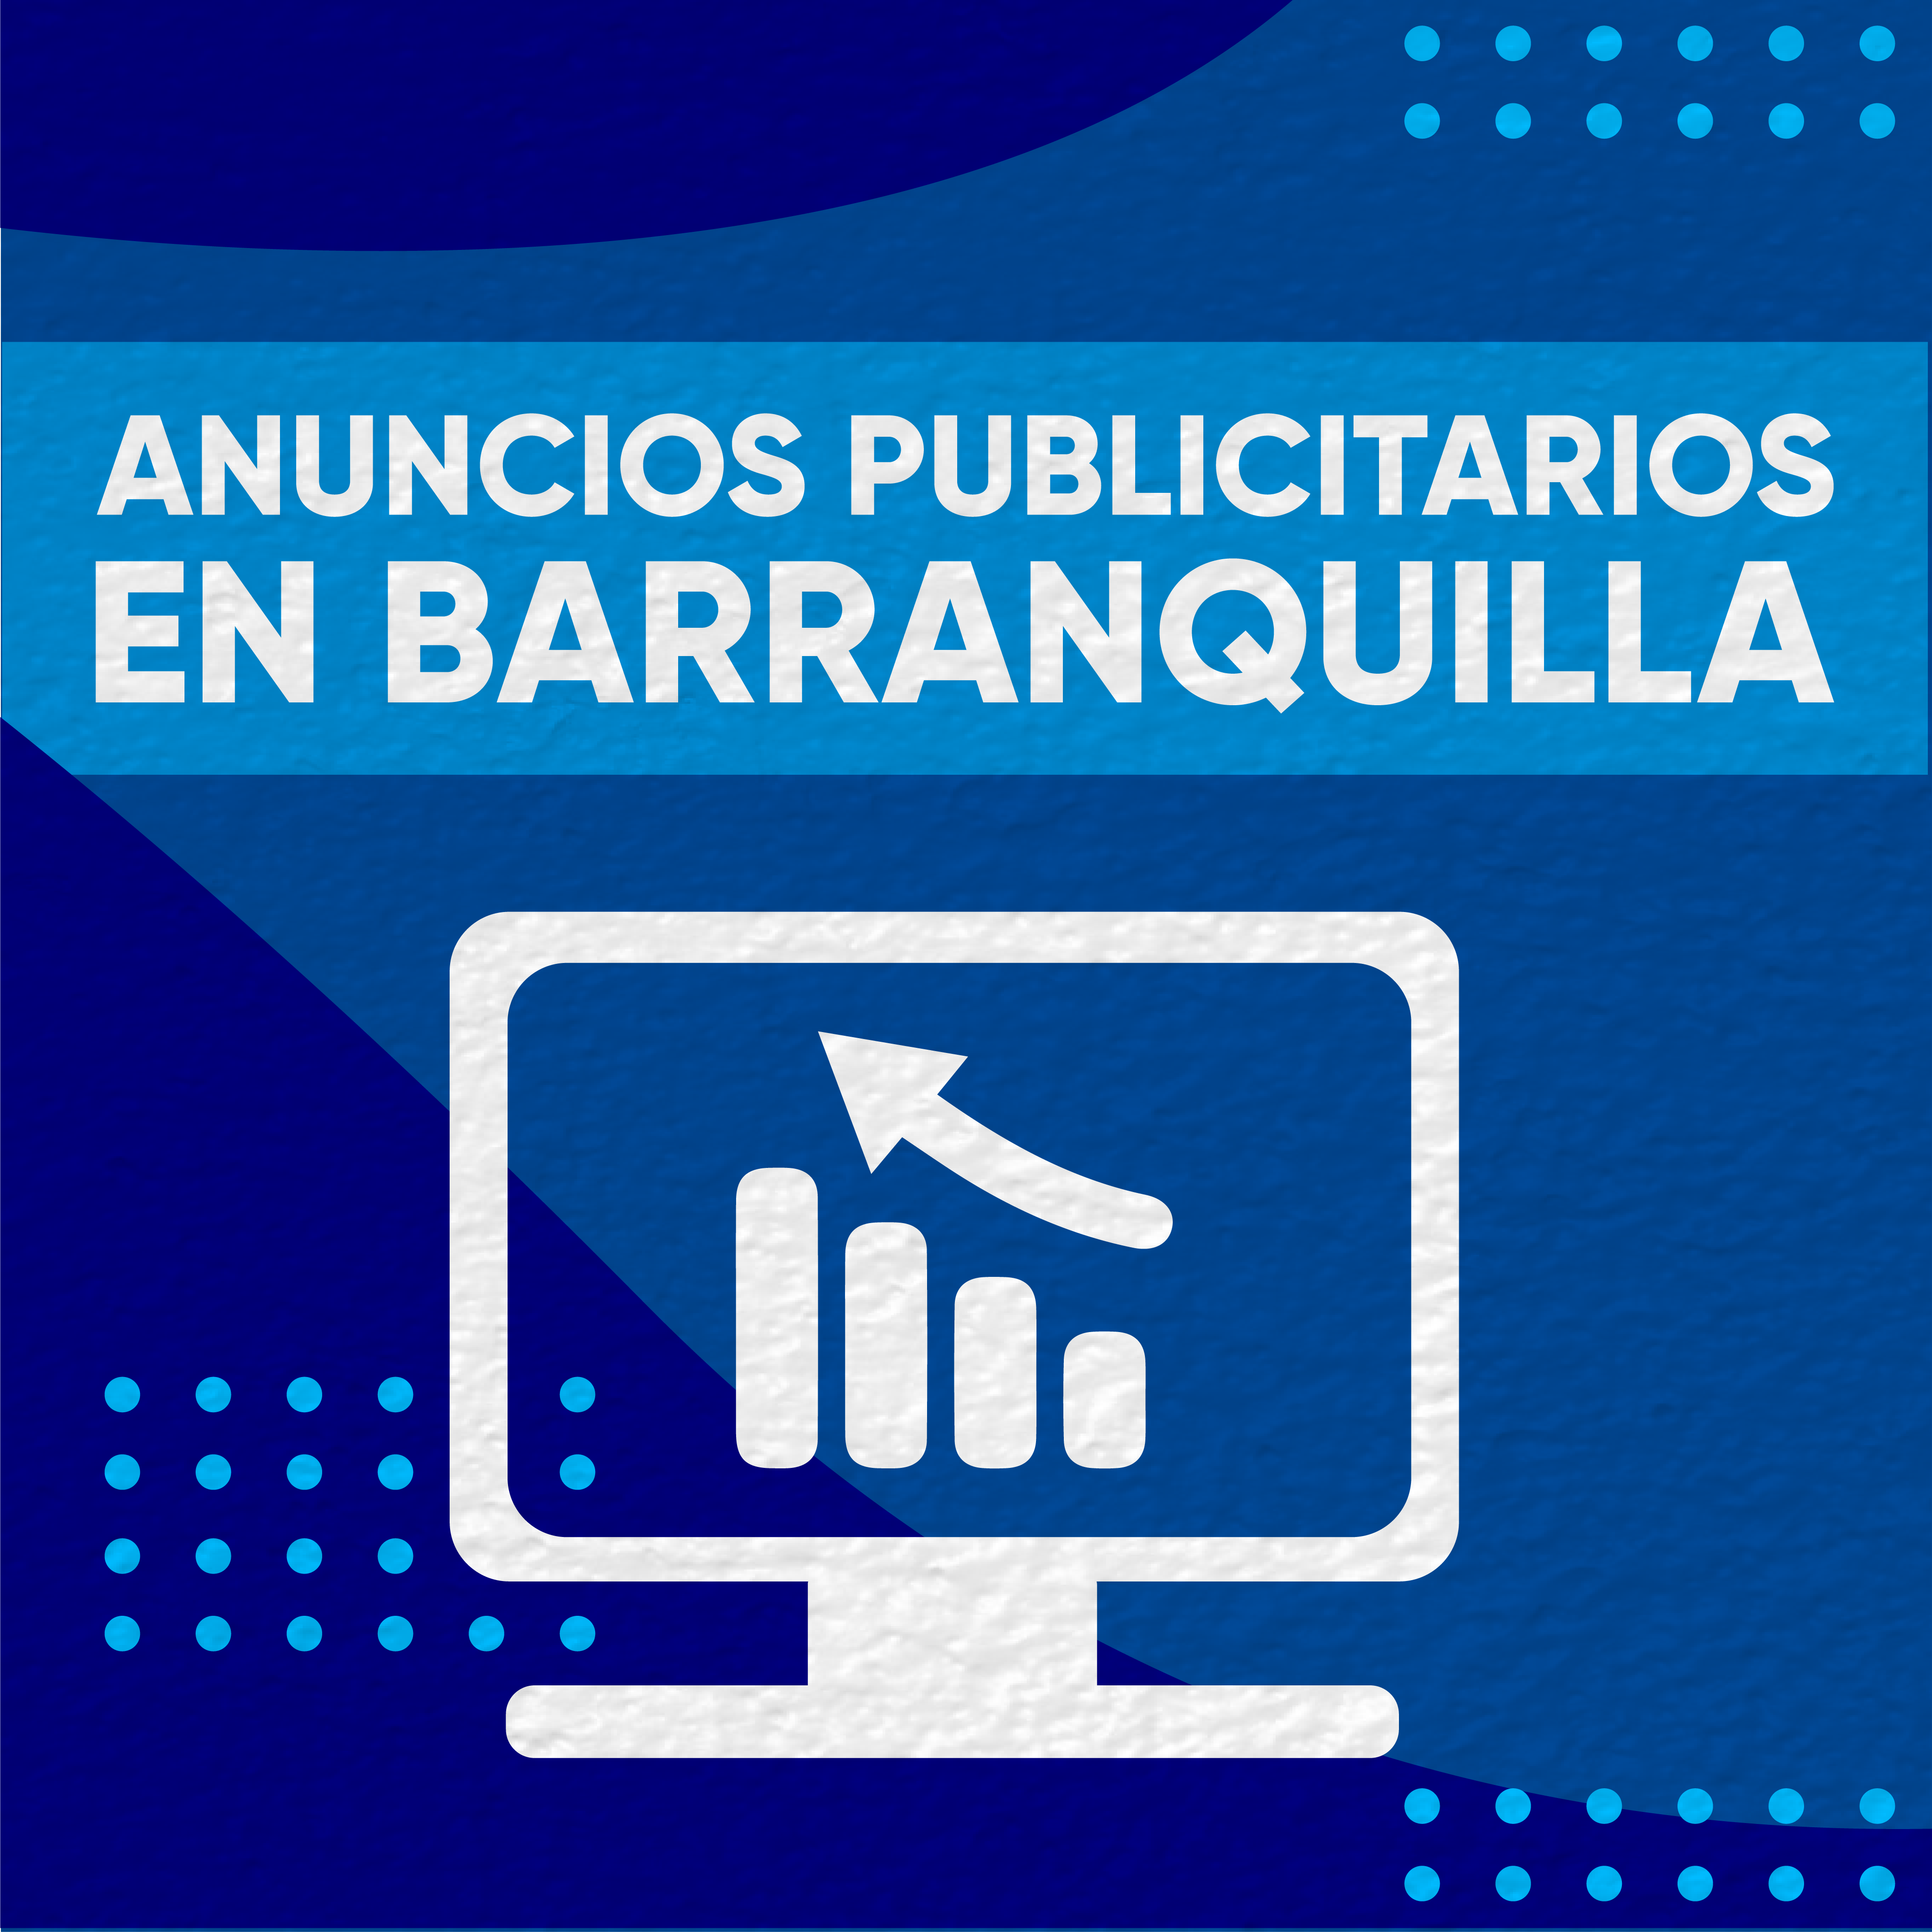 Anuncios publicitarios en Barranquilla